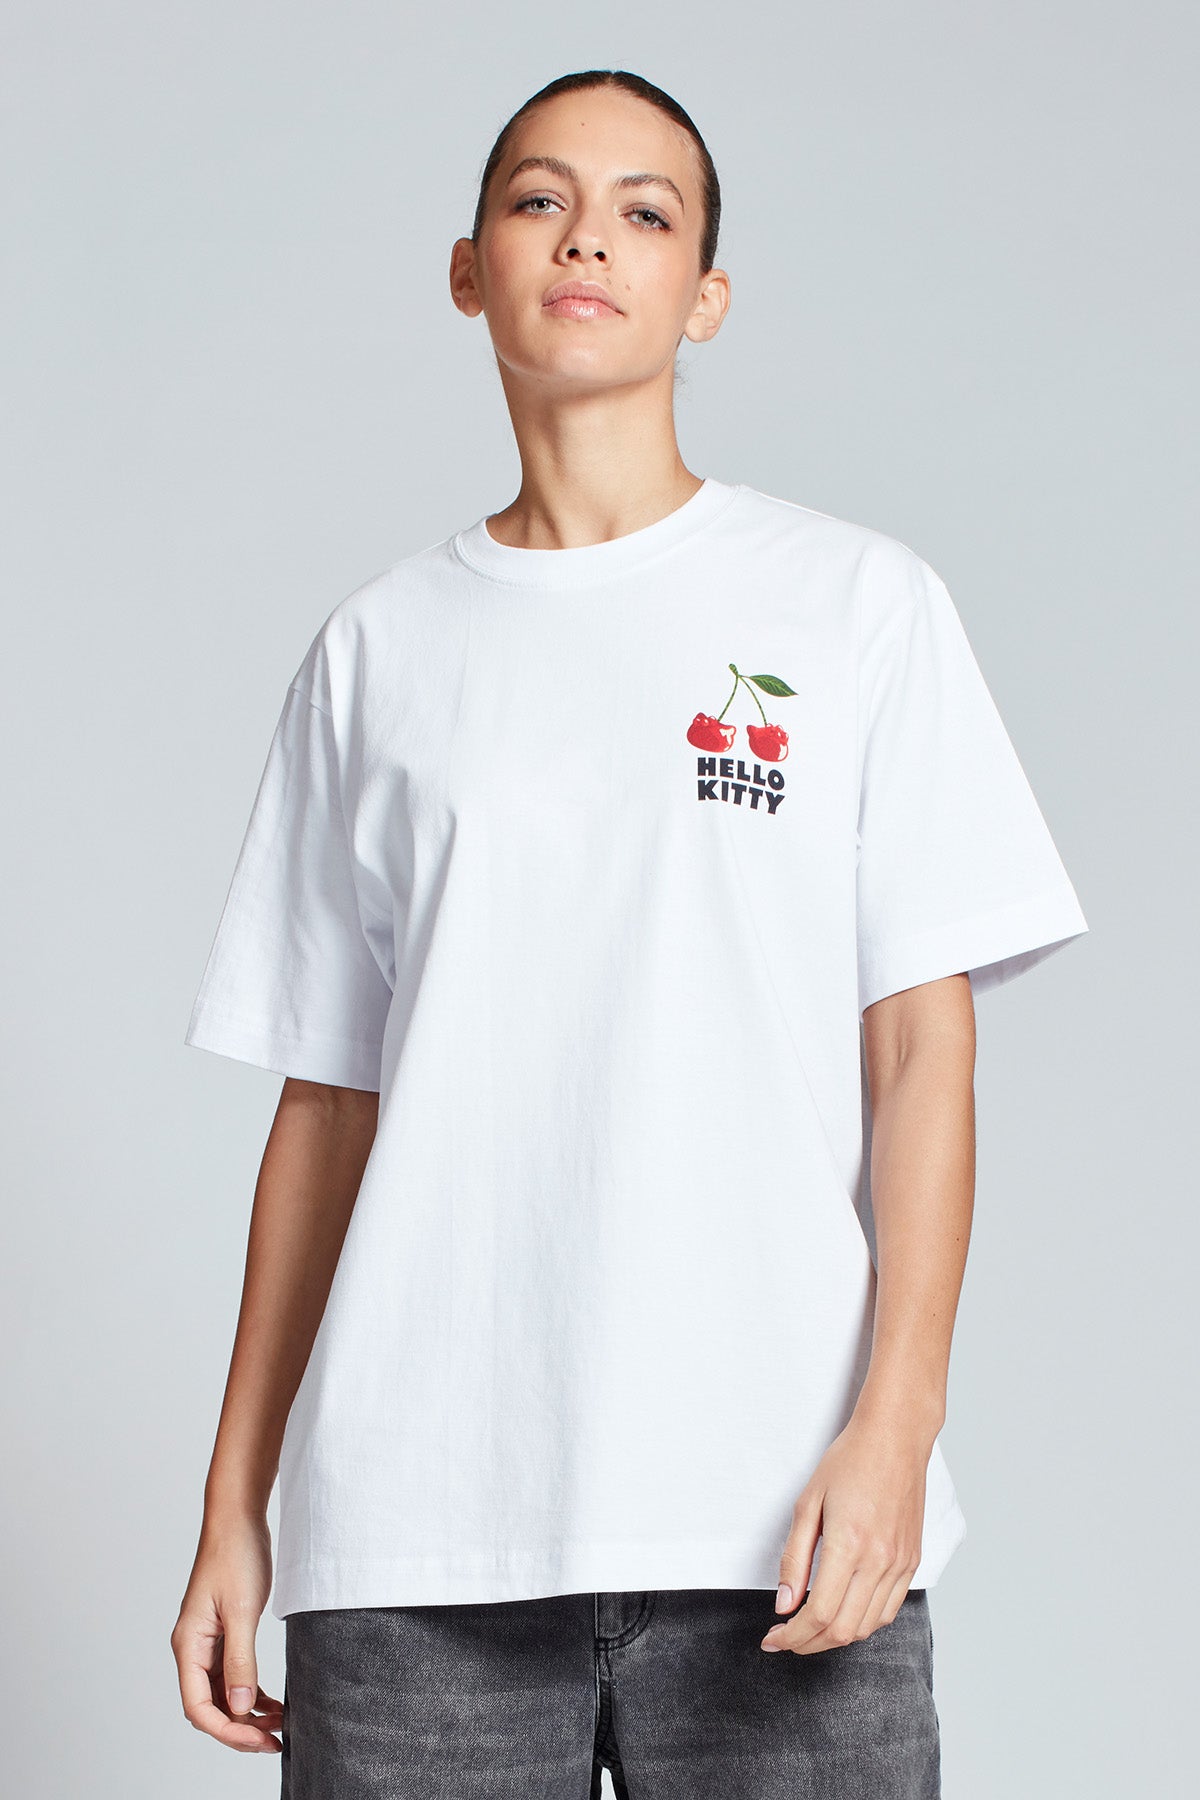 Hello Kitty Cherryland T-shirt in White